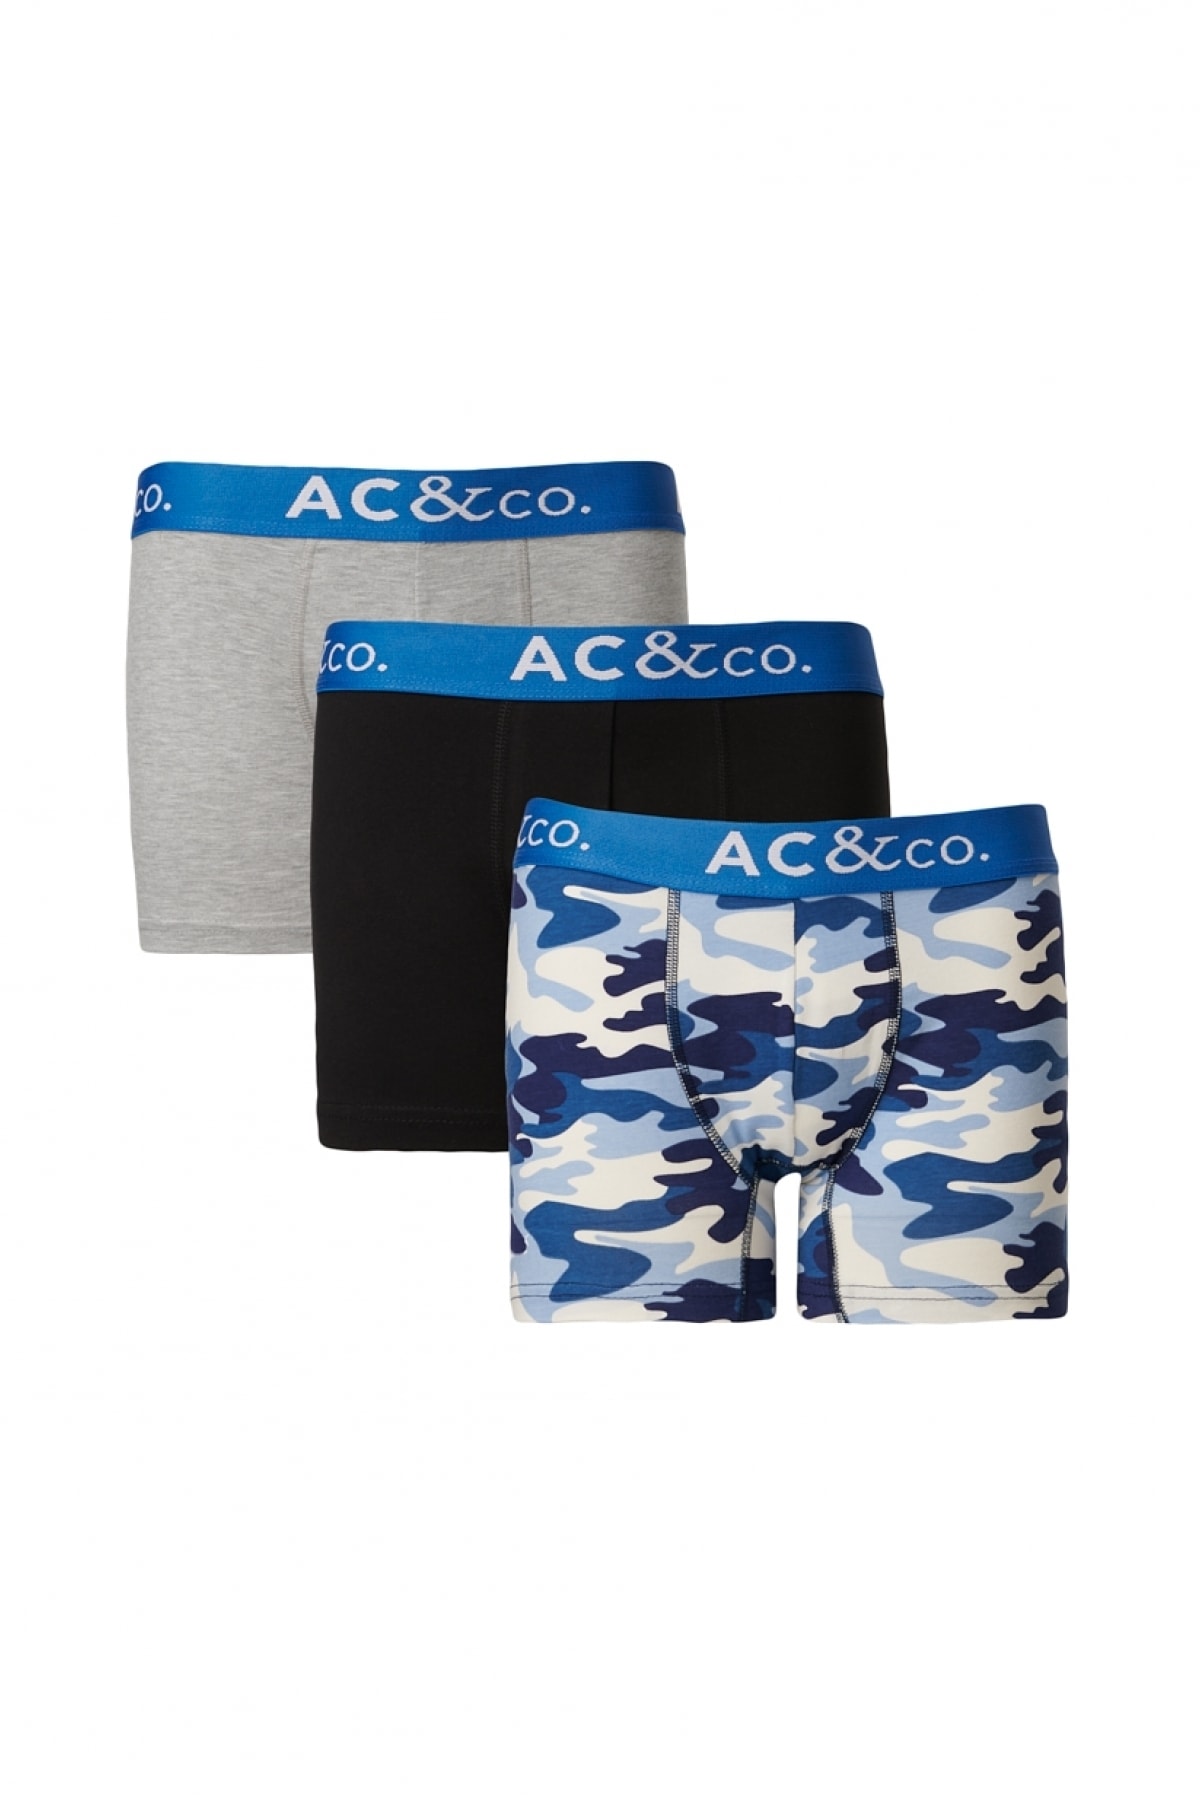 Levně AC&Co / Altınyıldız Classics Men's Navy-Grey 3-Pack Stretchy Patterned Cotton Boxer.